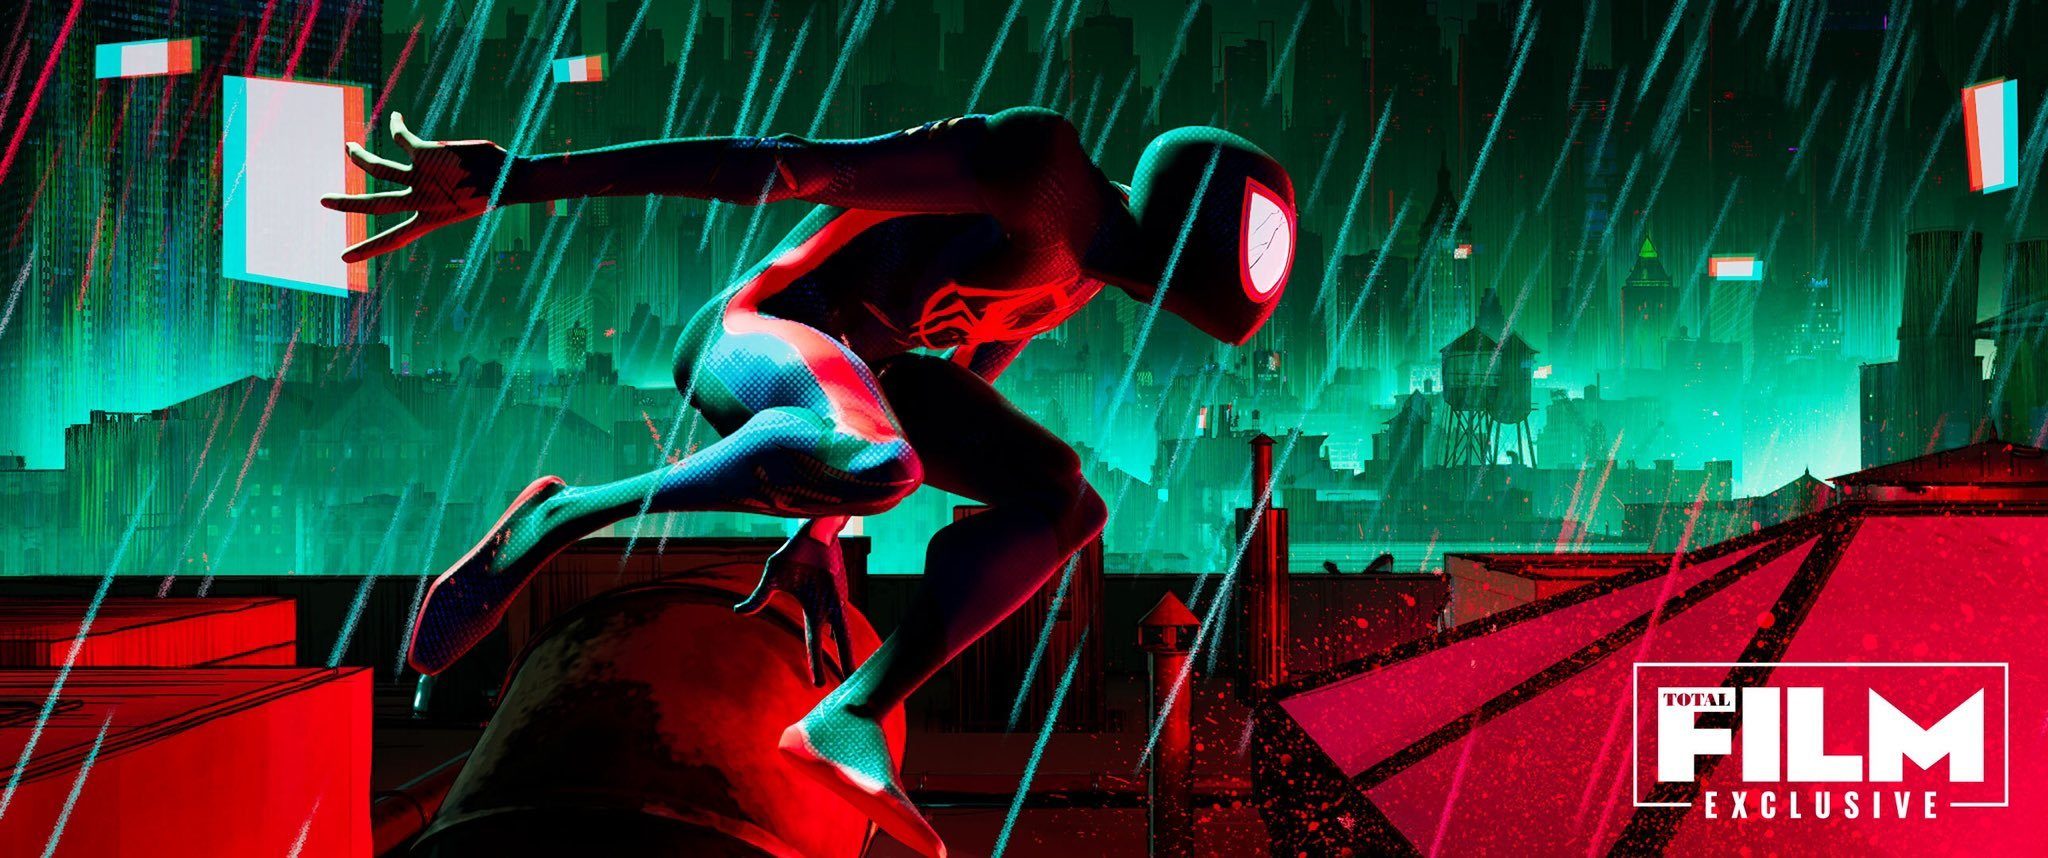 Майлз Моралес и прорва Паучков на постере анимационного фильма Человек-паук: Паутина вселенных от Sony | GameMAG